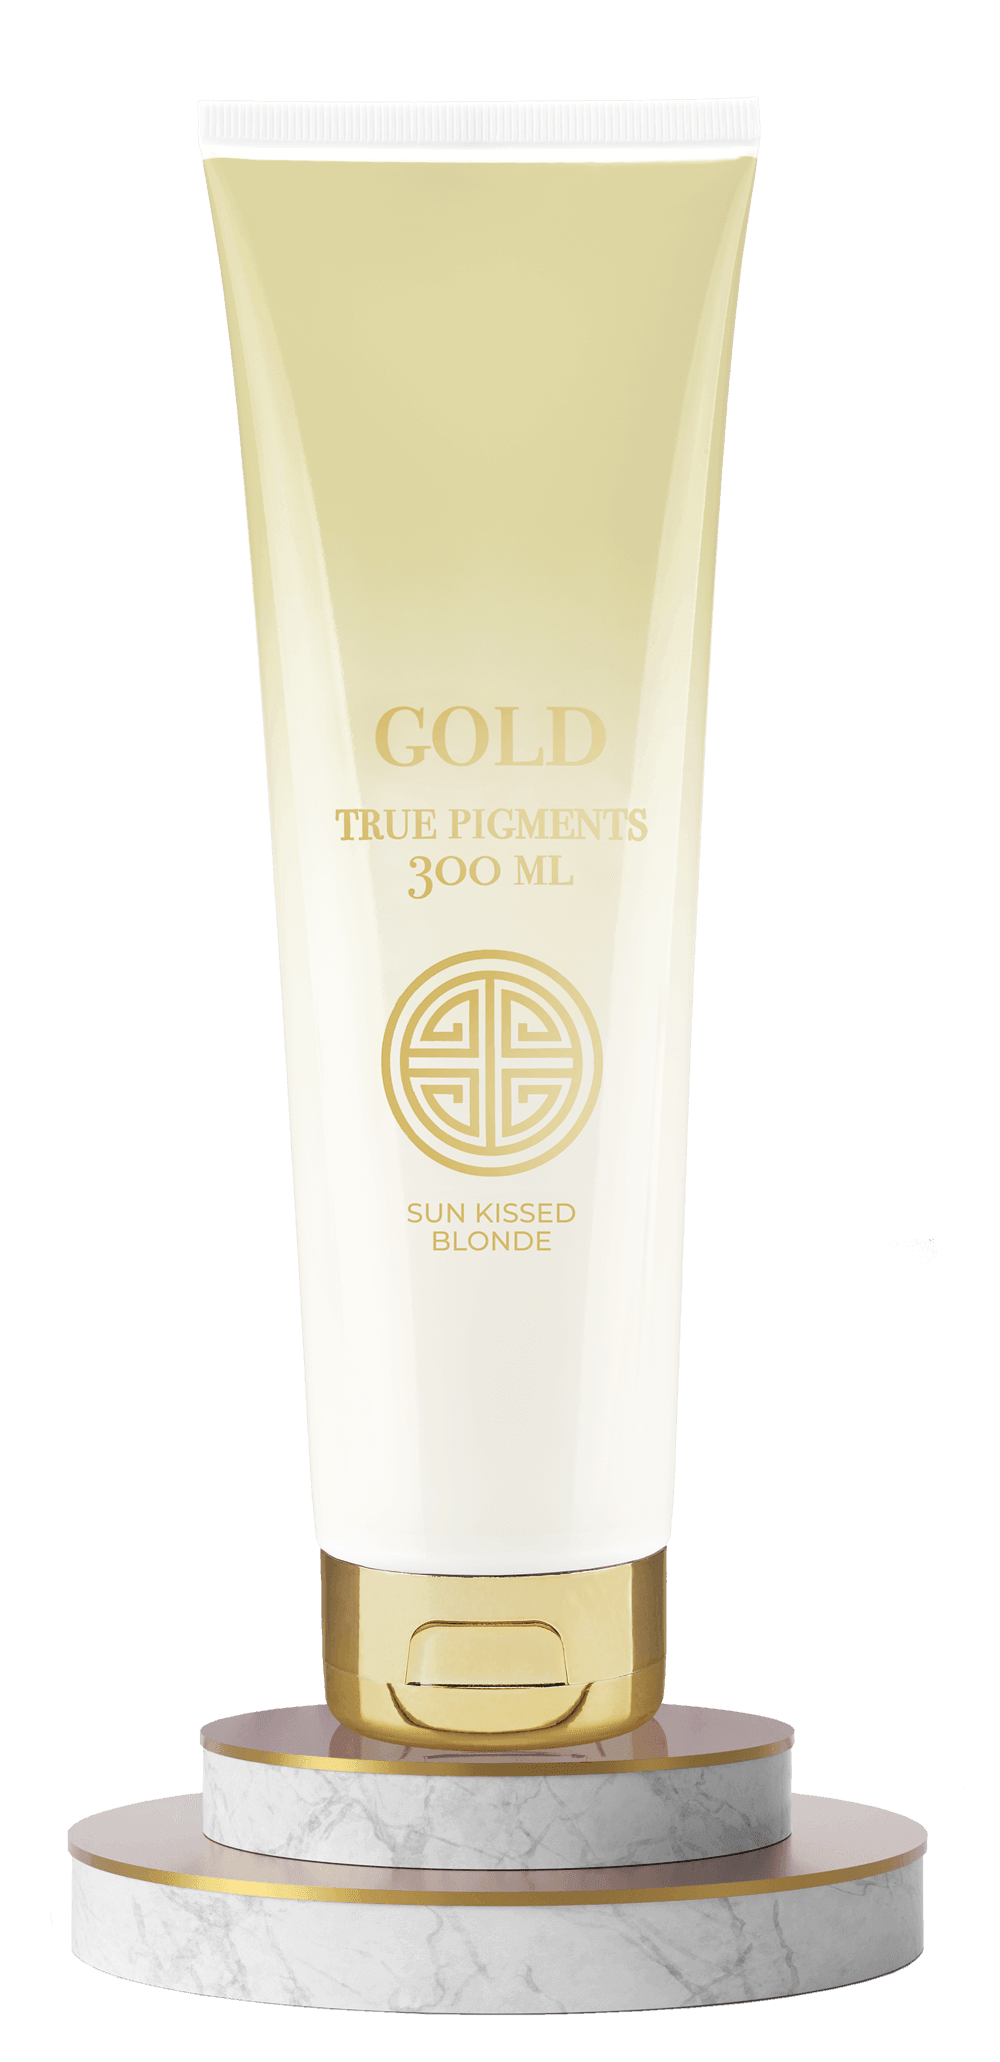 Gold True Pigments | Balsam | Gold | JK SHOP | JK Barber og herre frisør | Lavepriser | Best